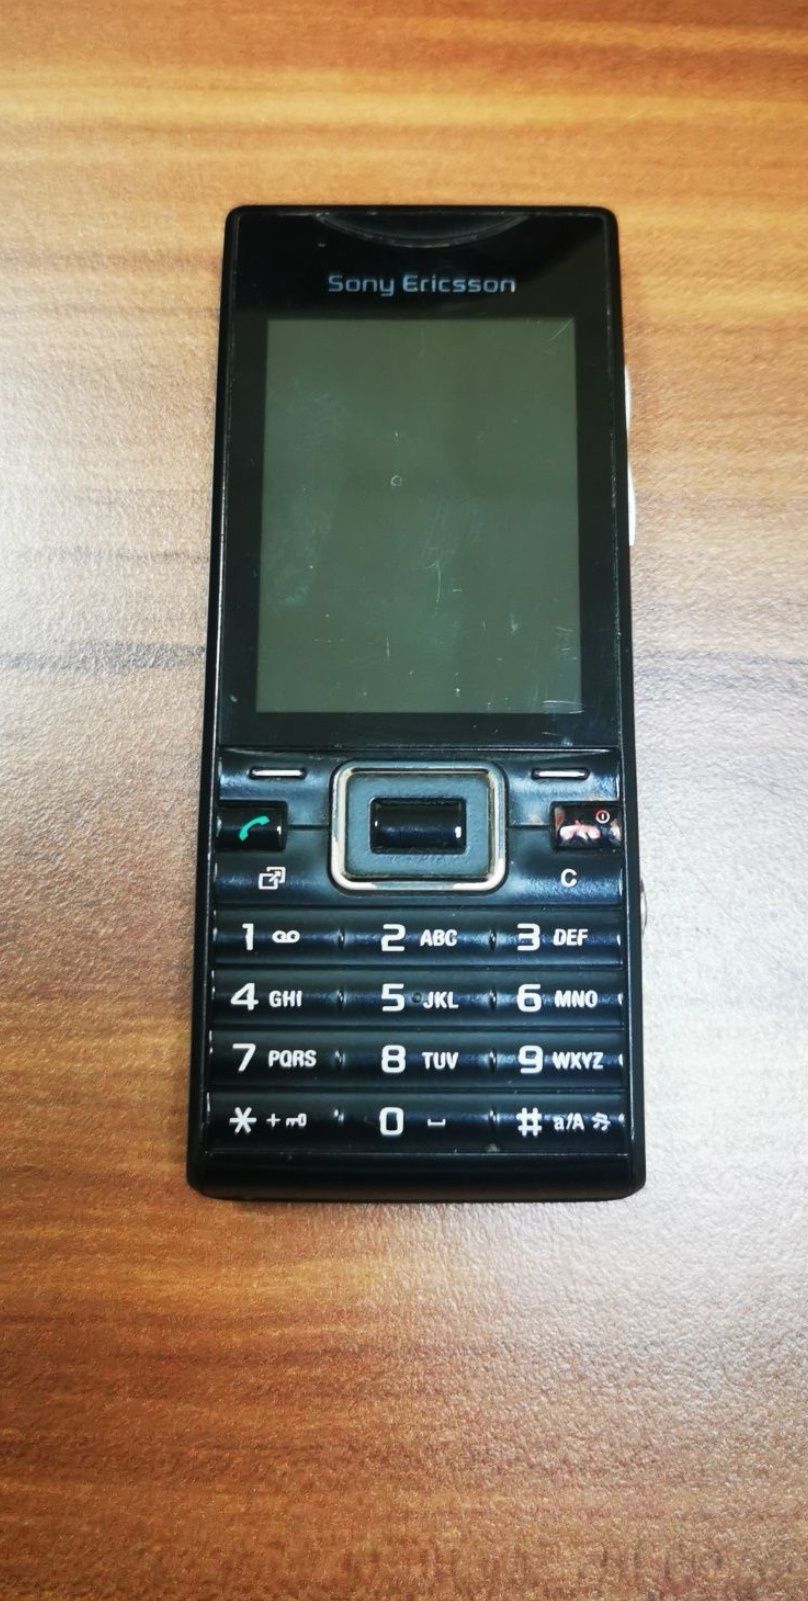 Nokia 5530, и Sony Ericsson